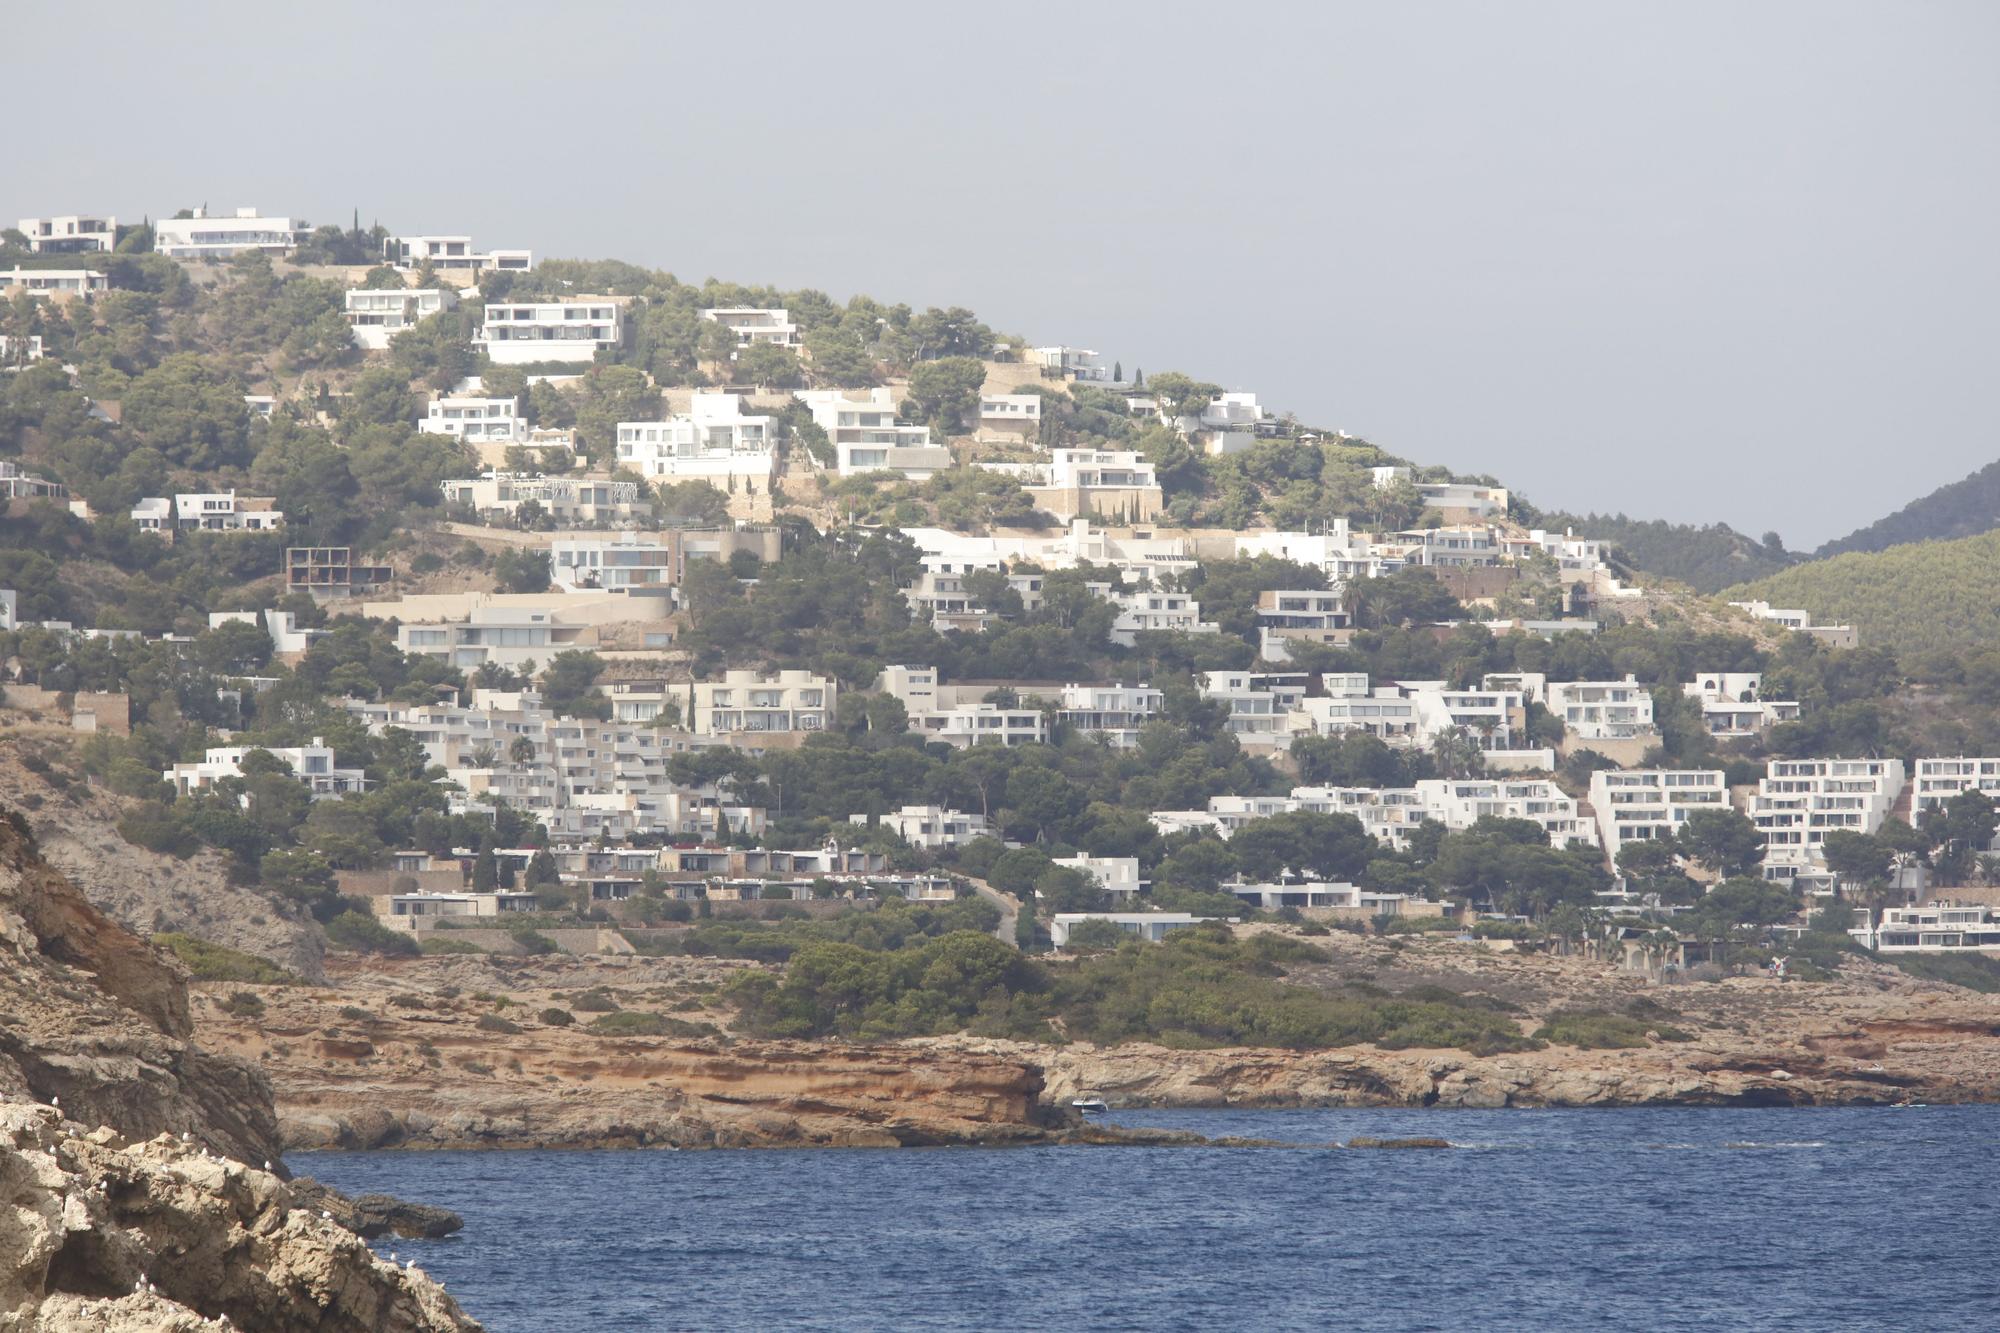 Labores de reflotamiento del yate hundido en Ibiza